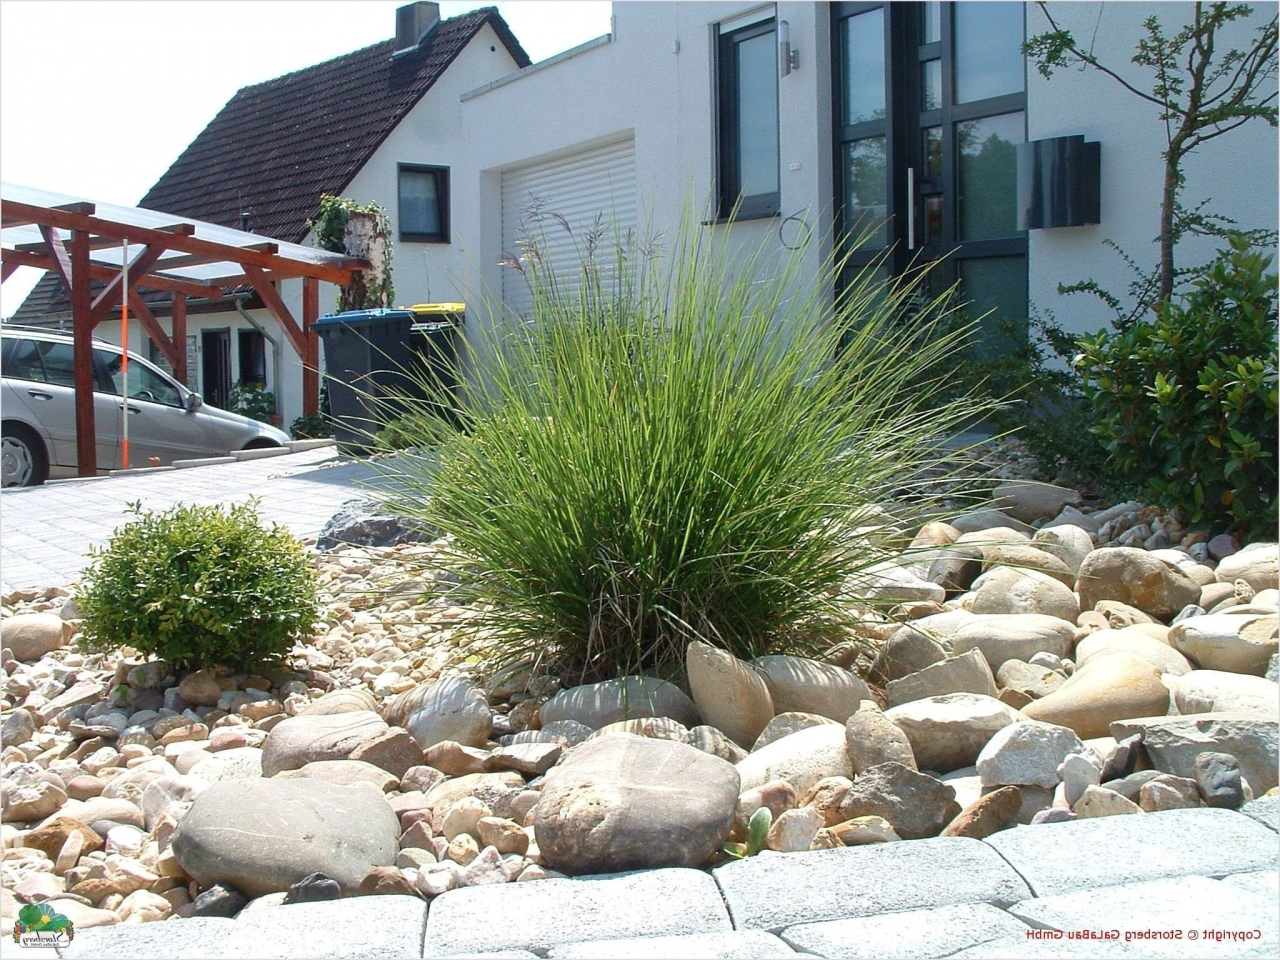 Gartengestaltung Bilder Luxus Landscaping with Rocks — Procura Home Blog